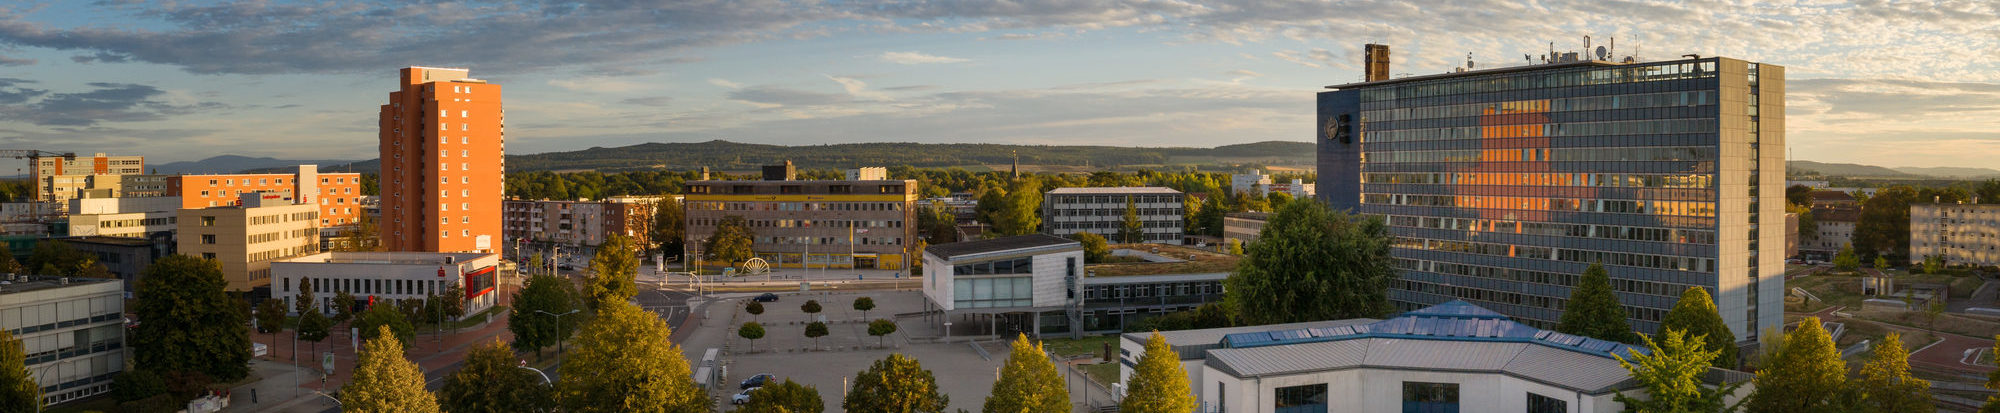 Panoramabild von Salzgitter-Lebenstedt